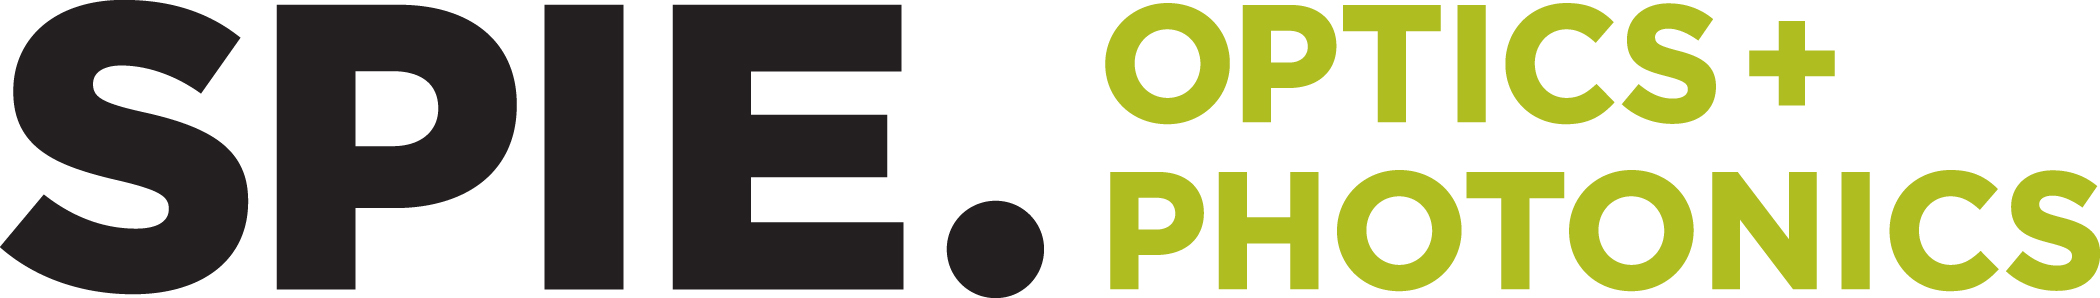 SPIE Optics + Photonics Logo